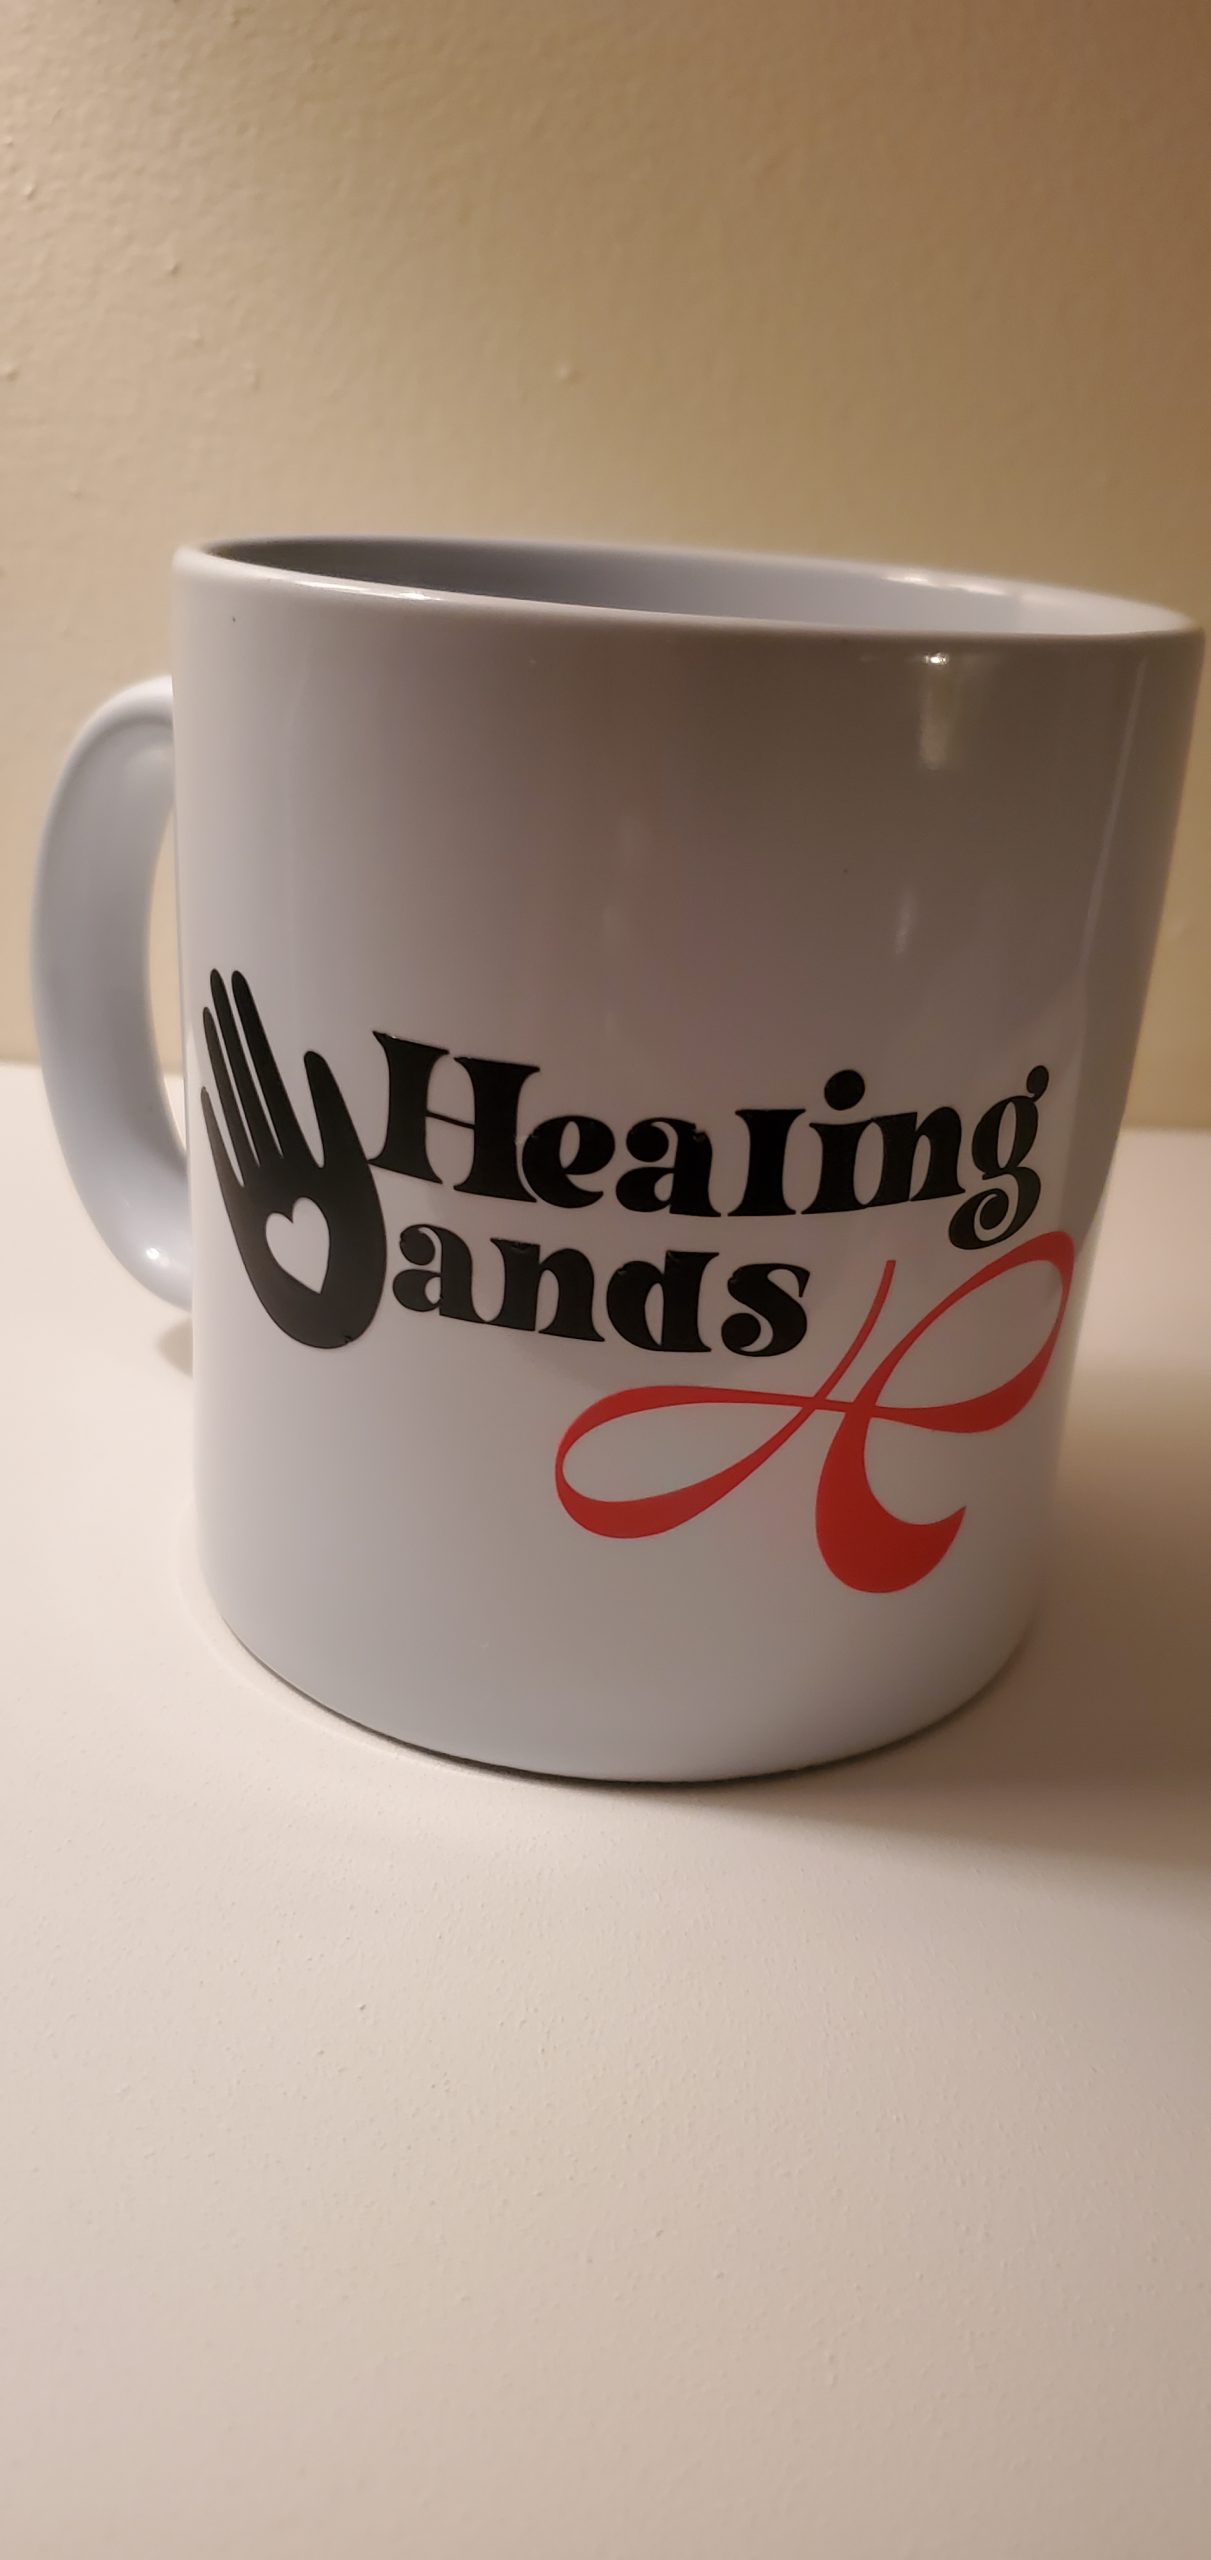 https://www.butterflyessentialwellness.com/wp-content/uploads/2021/03/Healing-Hand-Tea-Mug-scaled.jpg